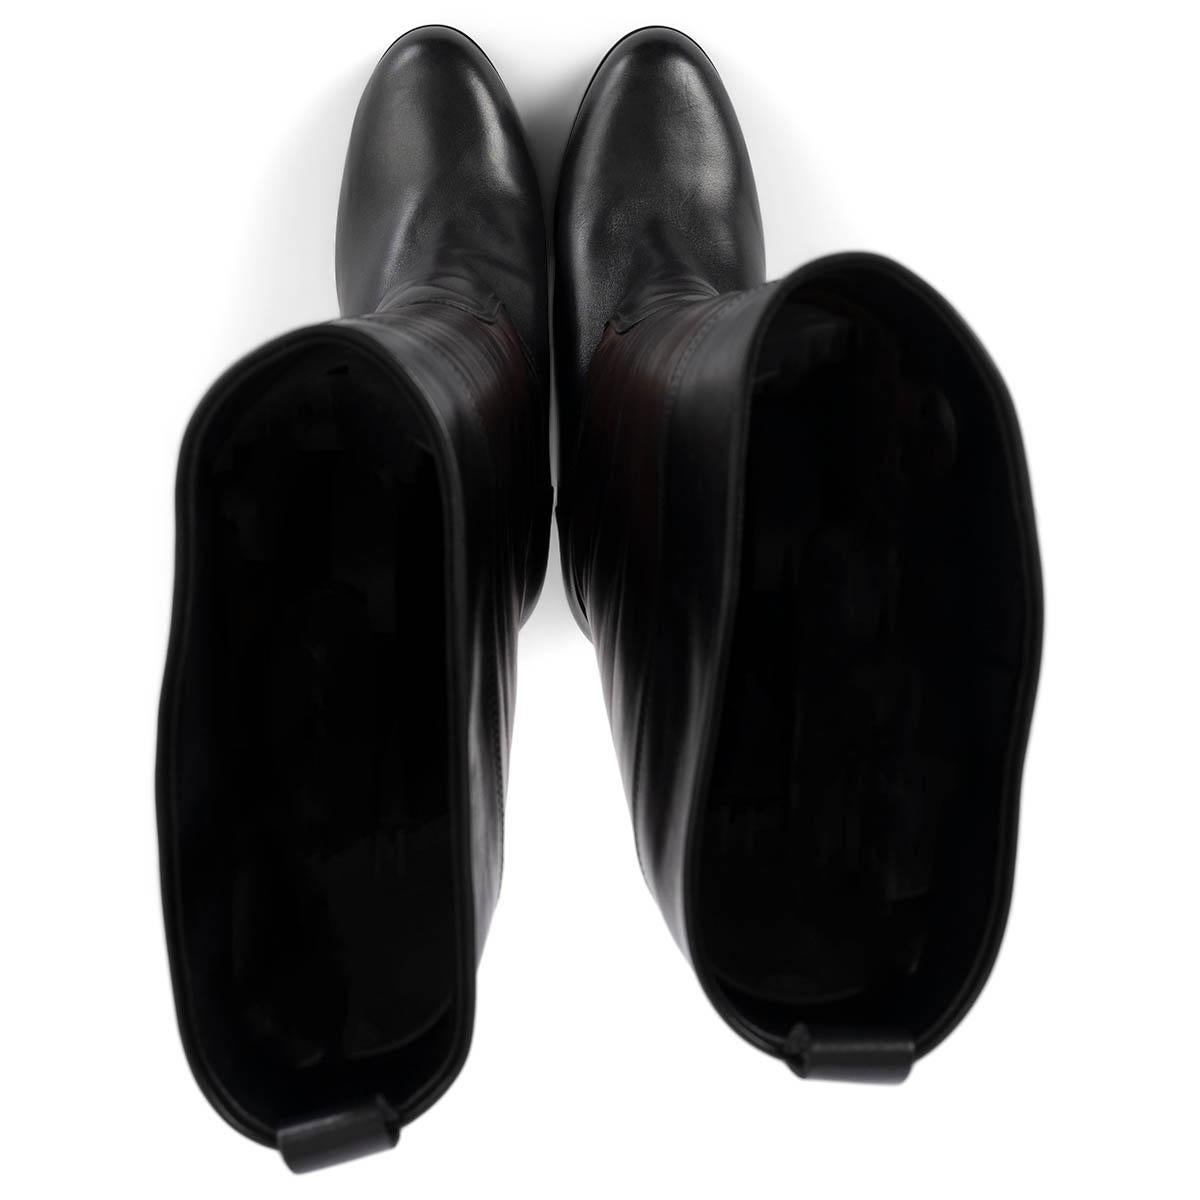 HERMES cuir marron foncé et noir 2010 PLATFORMBoots Chaussures 40.5 Pour femmes en vente